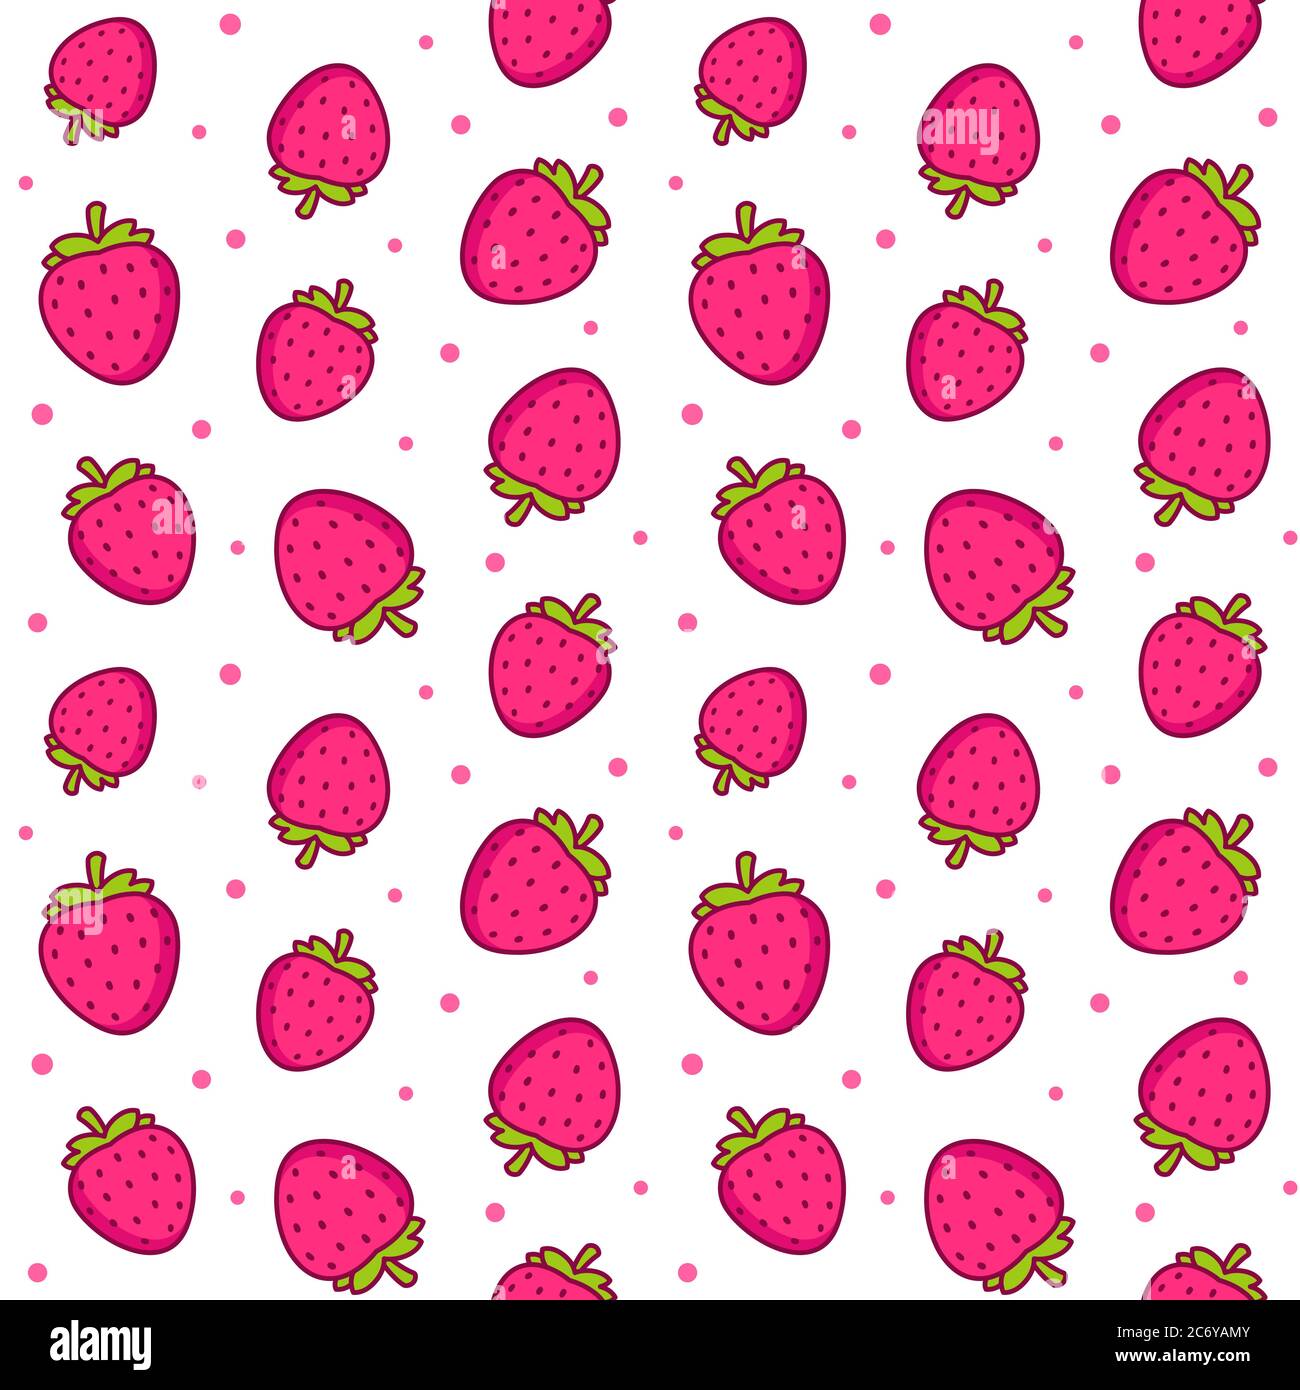 Niedliche Cartoon Erdbeere Muster. Nahtlose Textur von Erdbeeren und rosa Tupfen auf weißem Hintergrund. Vektorgrafik Clip Art Illustration. Stock Vektor